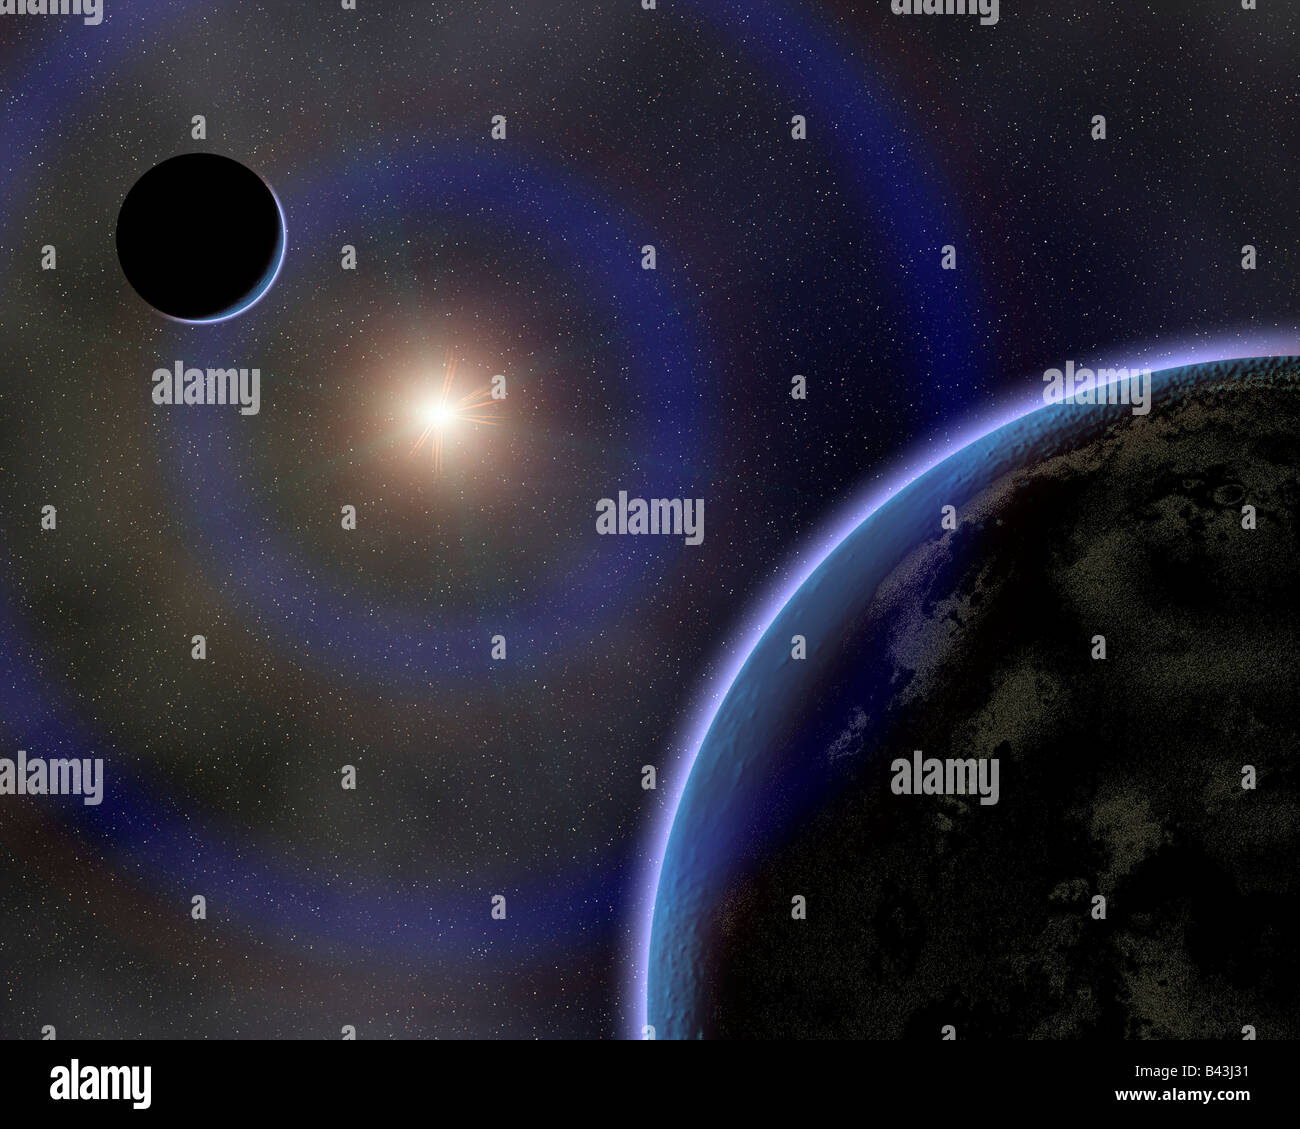 The Earth & Moon In Orbit Around The Sun. Stock Photo